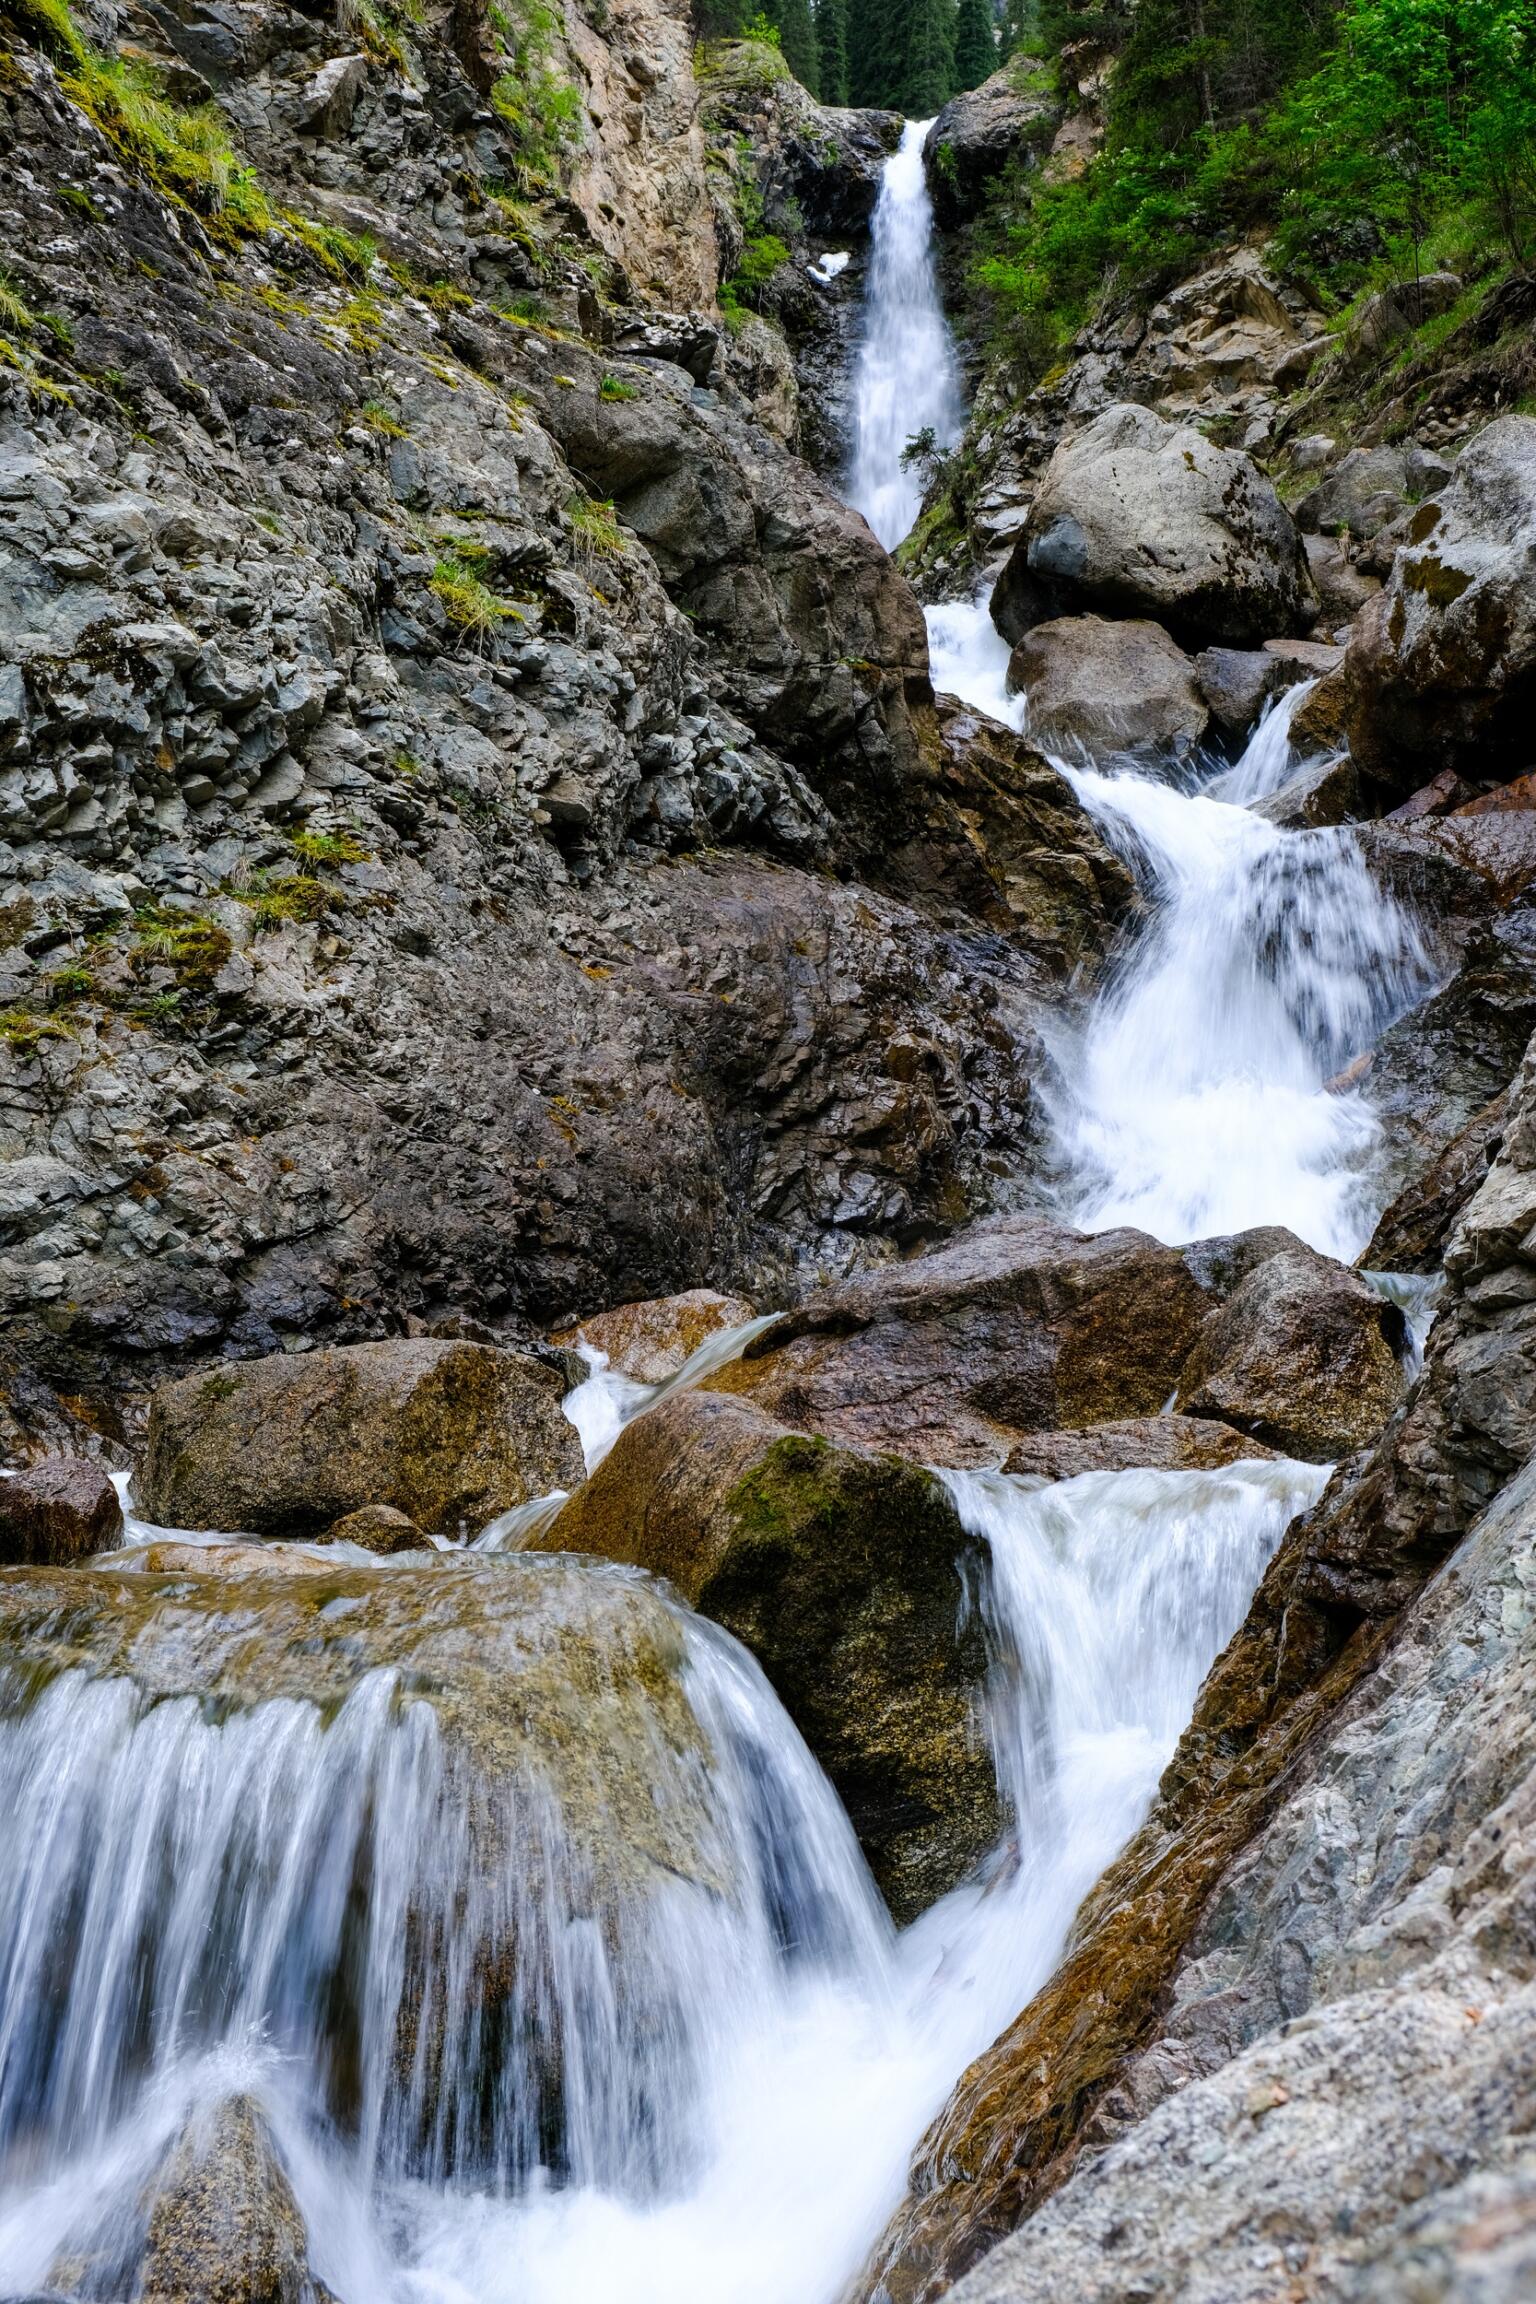 barskoon gorge waterfall in kyrgyzstan